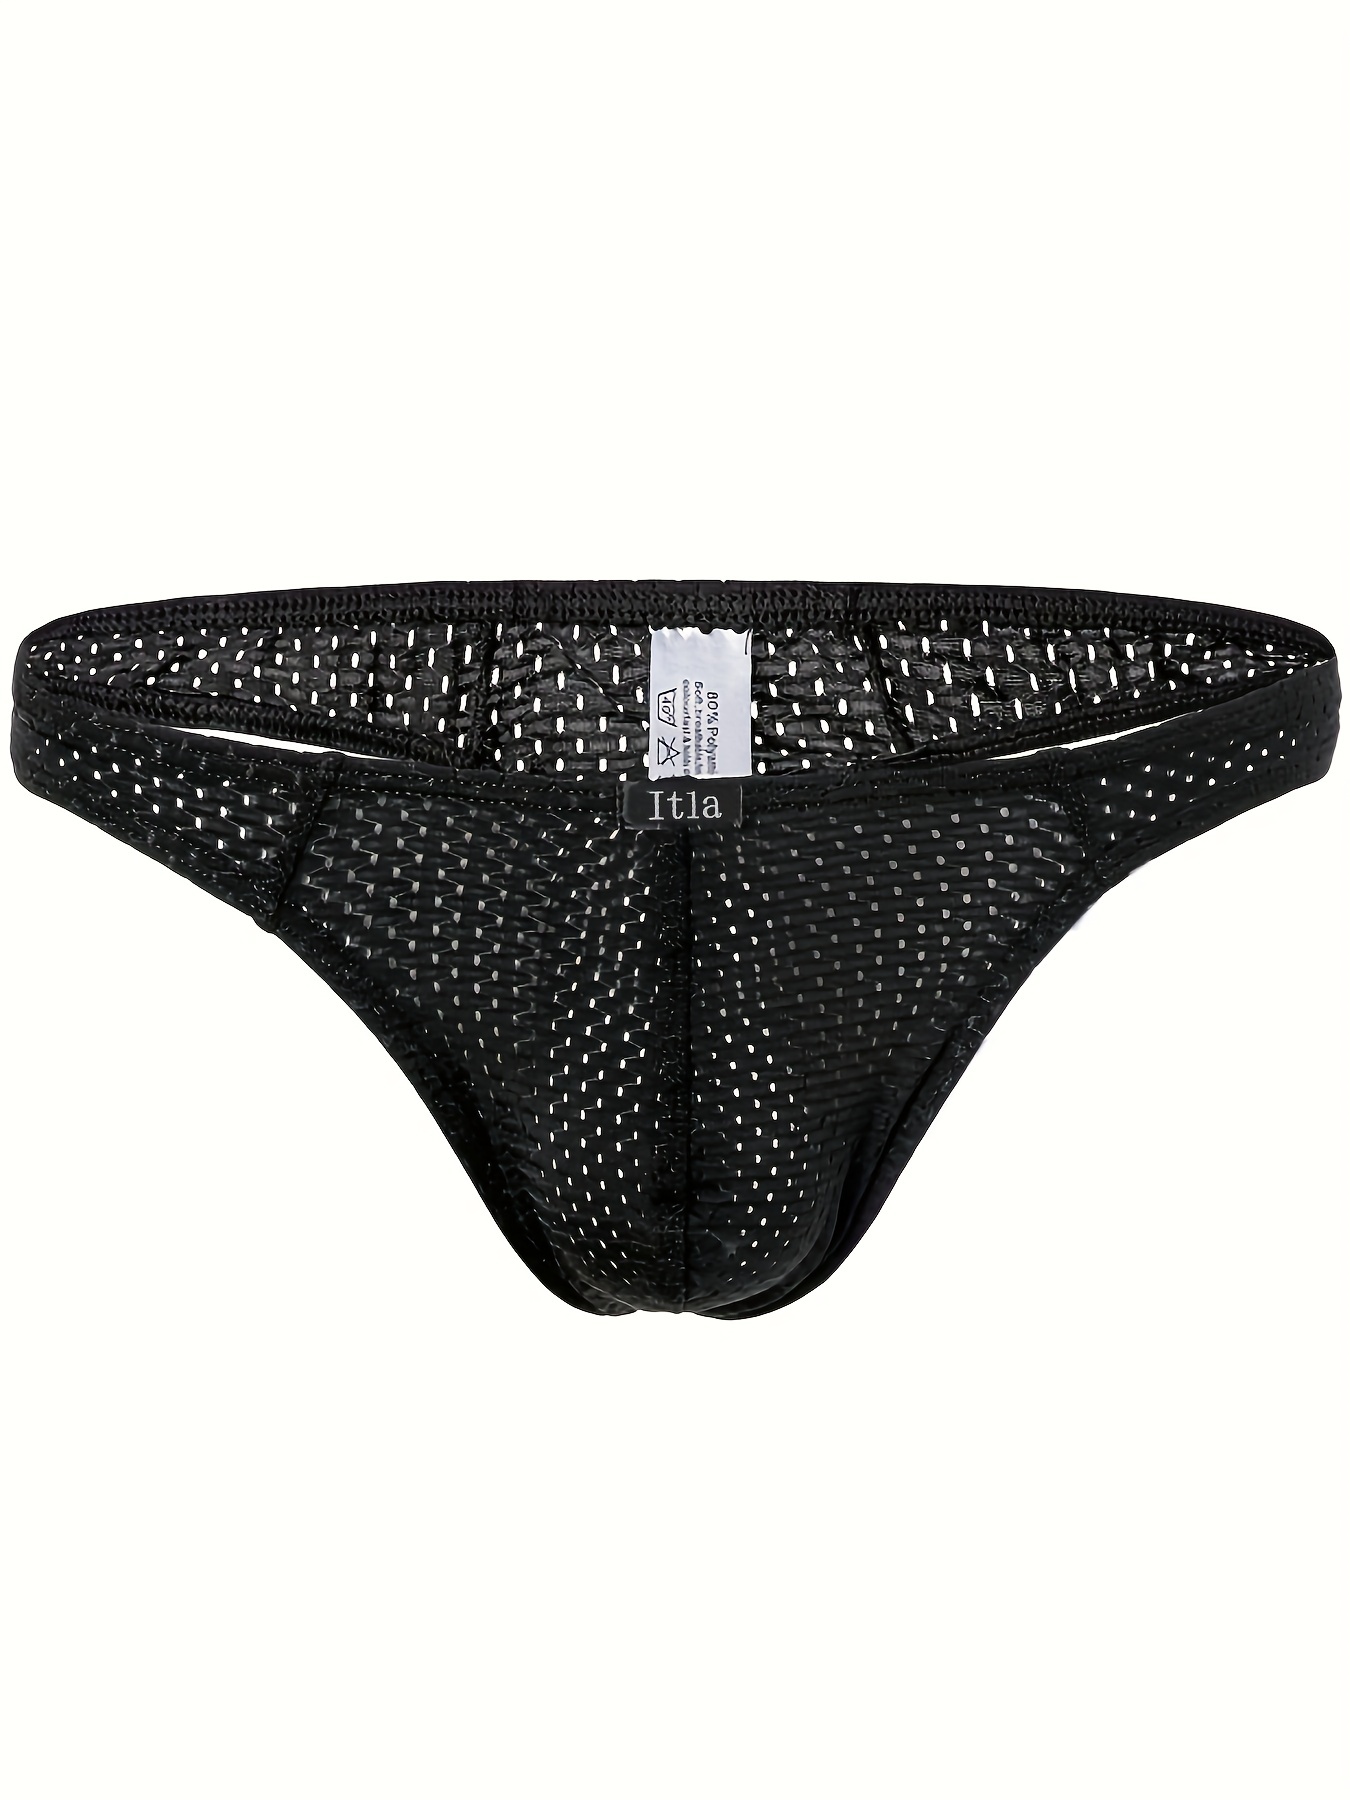 Plus Size Men's Underwear Sexy Bulge Pouch Briefs Lingerie - Temu